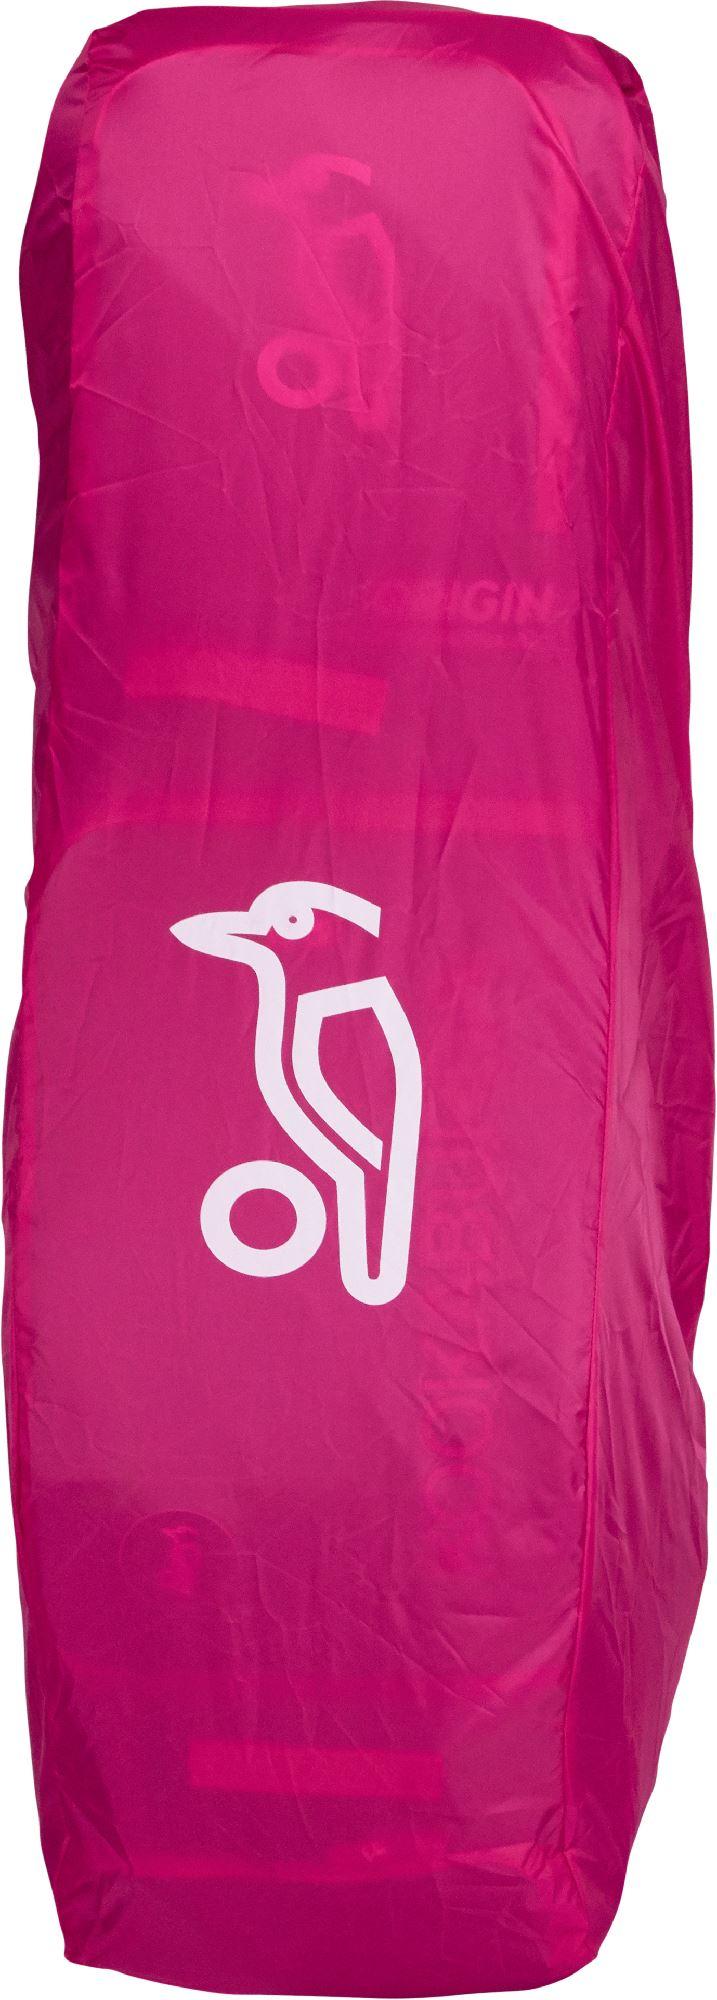 KOOKABURRA Hockey Bag Rain Cover 